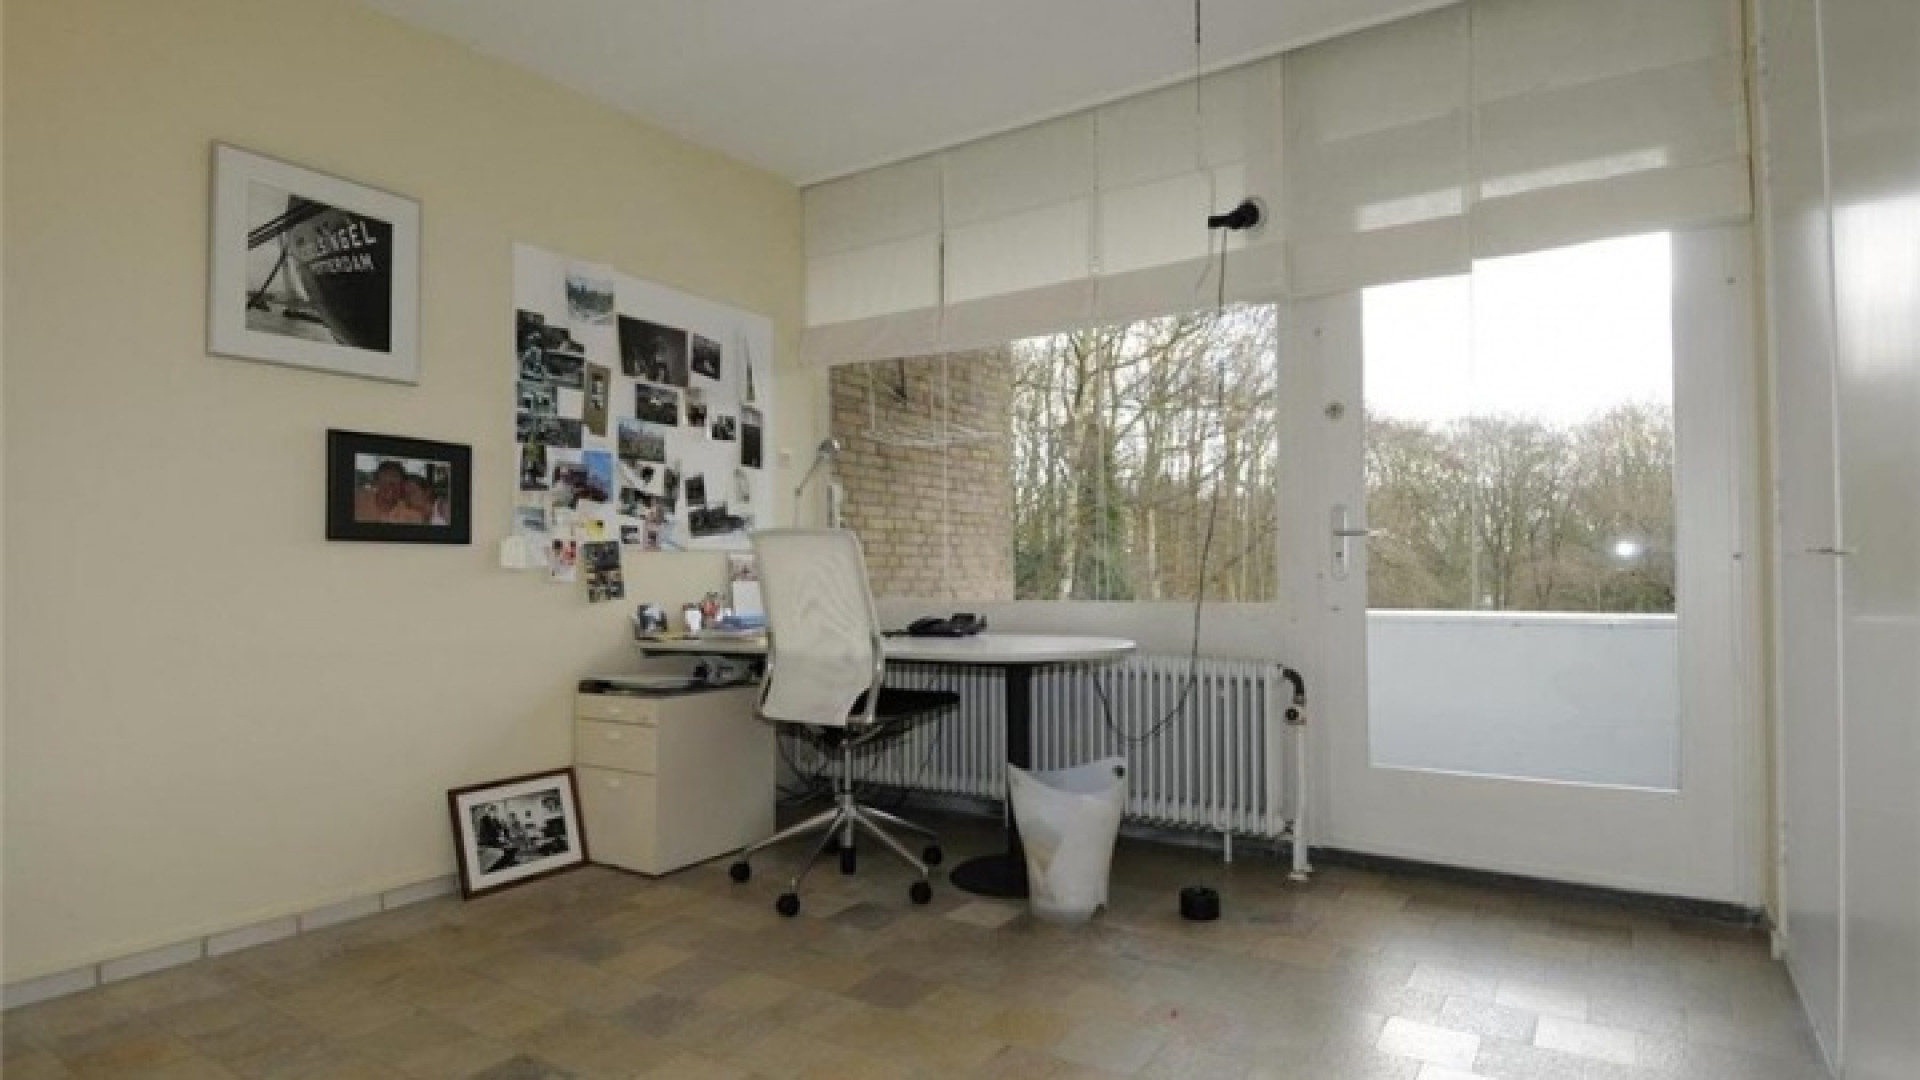 Neelie Smit Kroes hanteert botte bijl bij prijsverlaging van haar Wassenaarse villa. Zie foto's 18